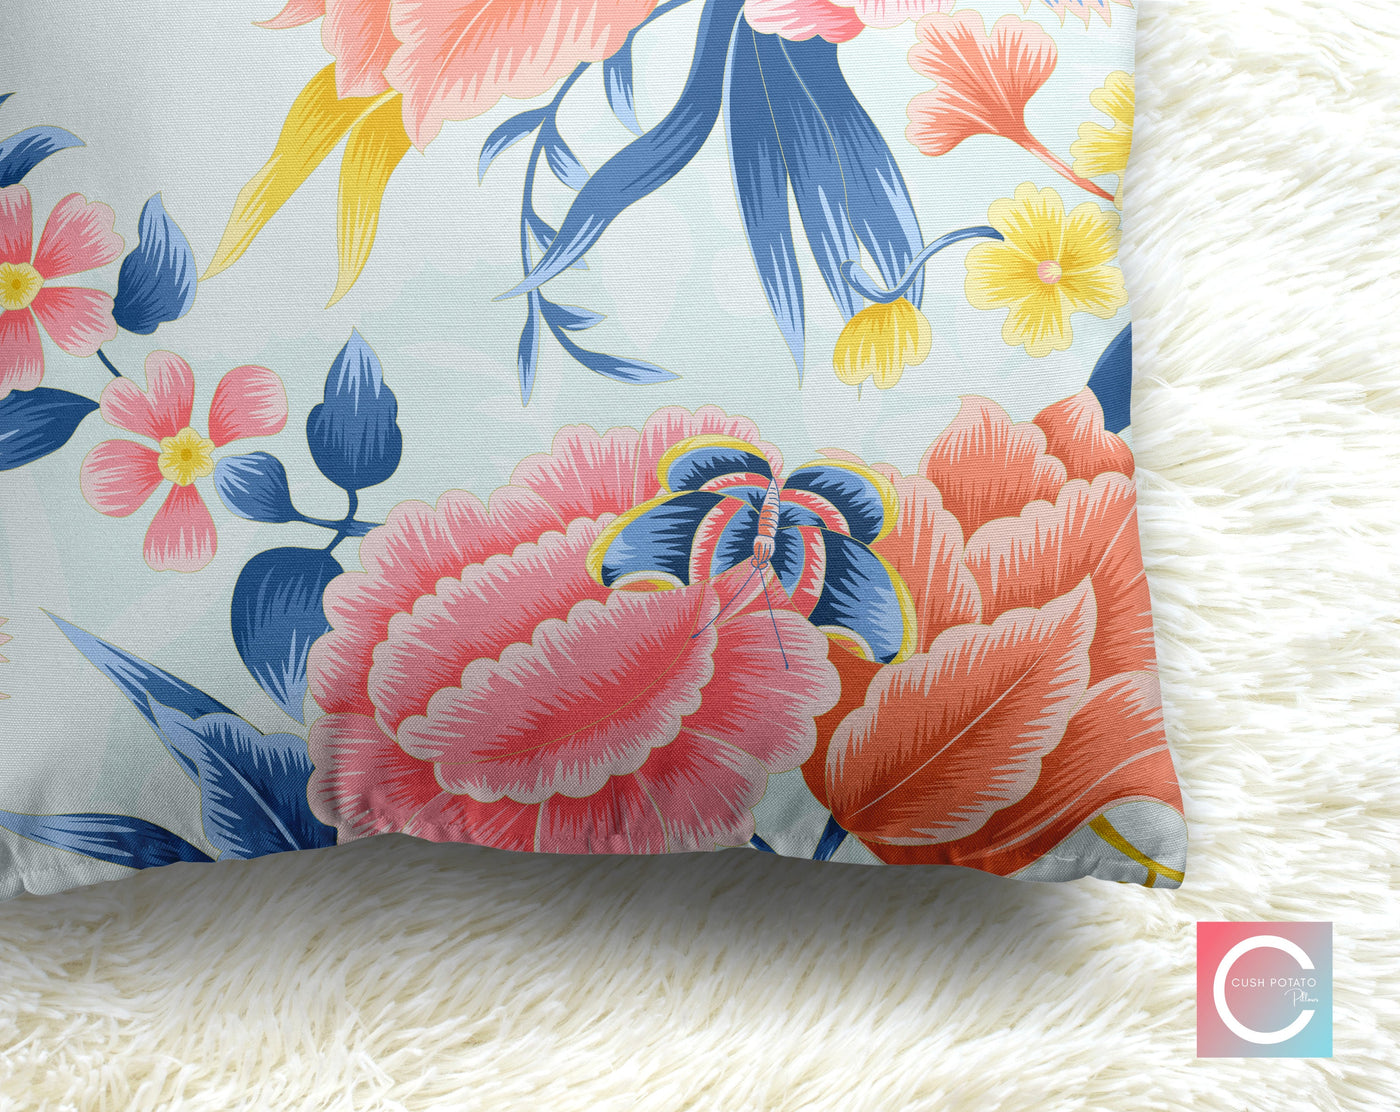 Floral Eden Baby Blue Decorative Pillow Throw Cover - Cush Potato Pillows